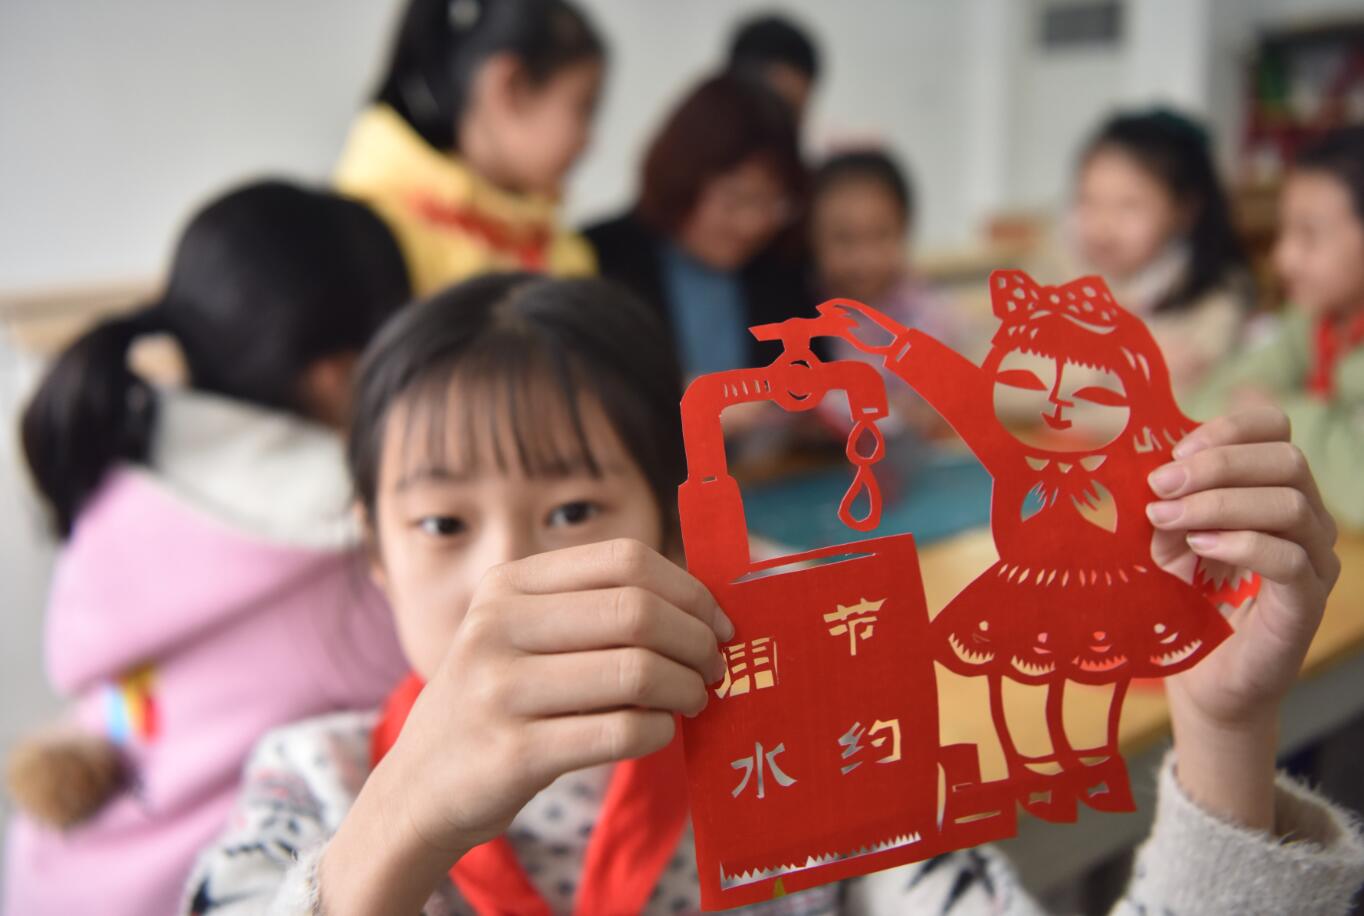 3月19日,山东省高密市第四实验小学的师生展示"节水"题材的剪纸作品.